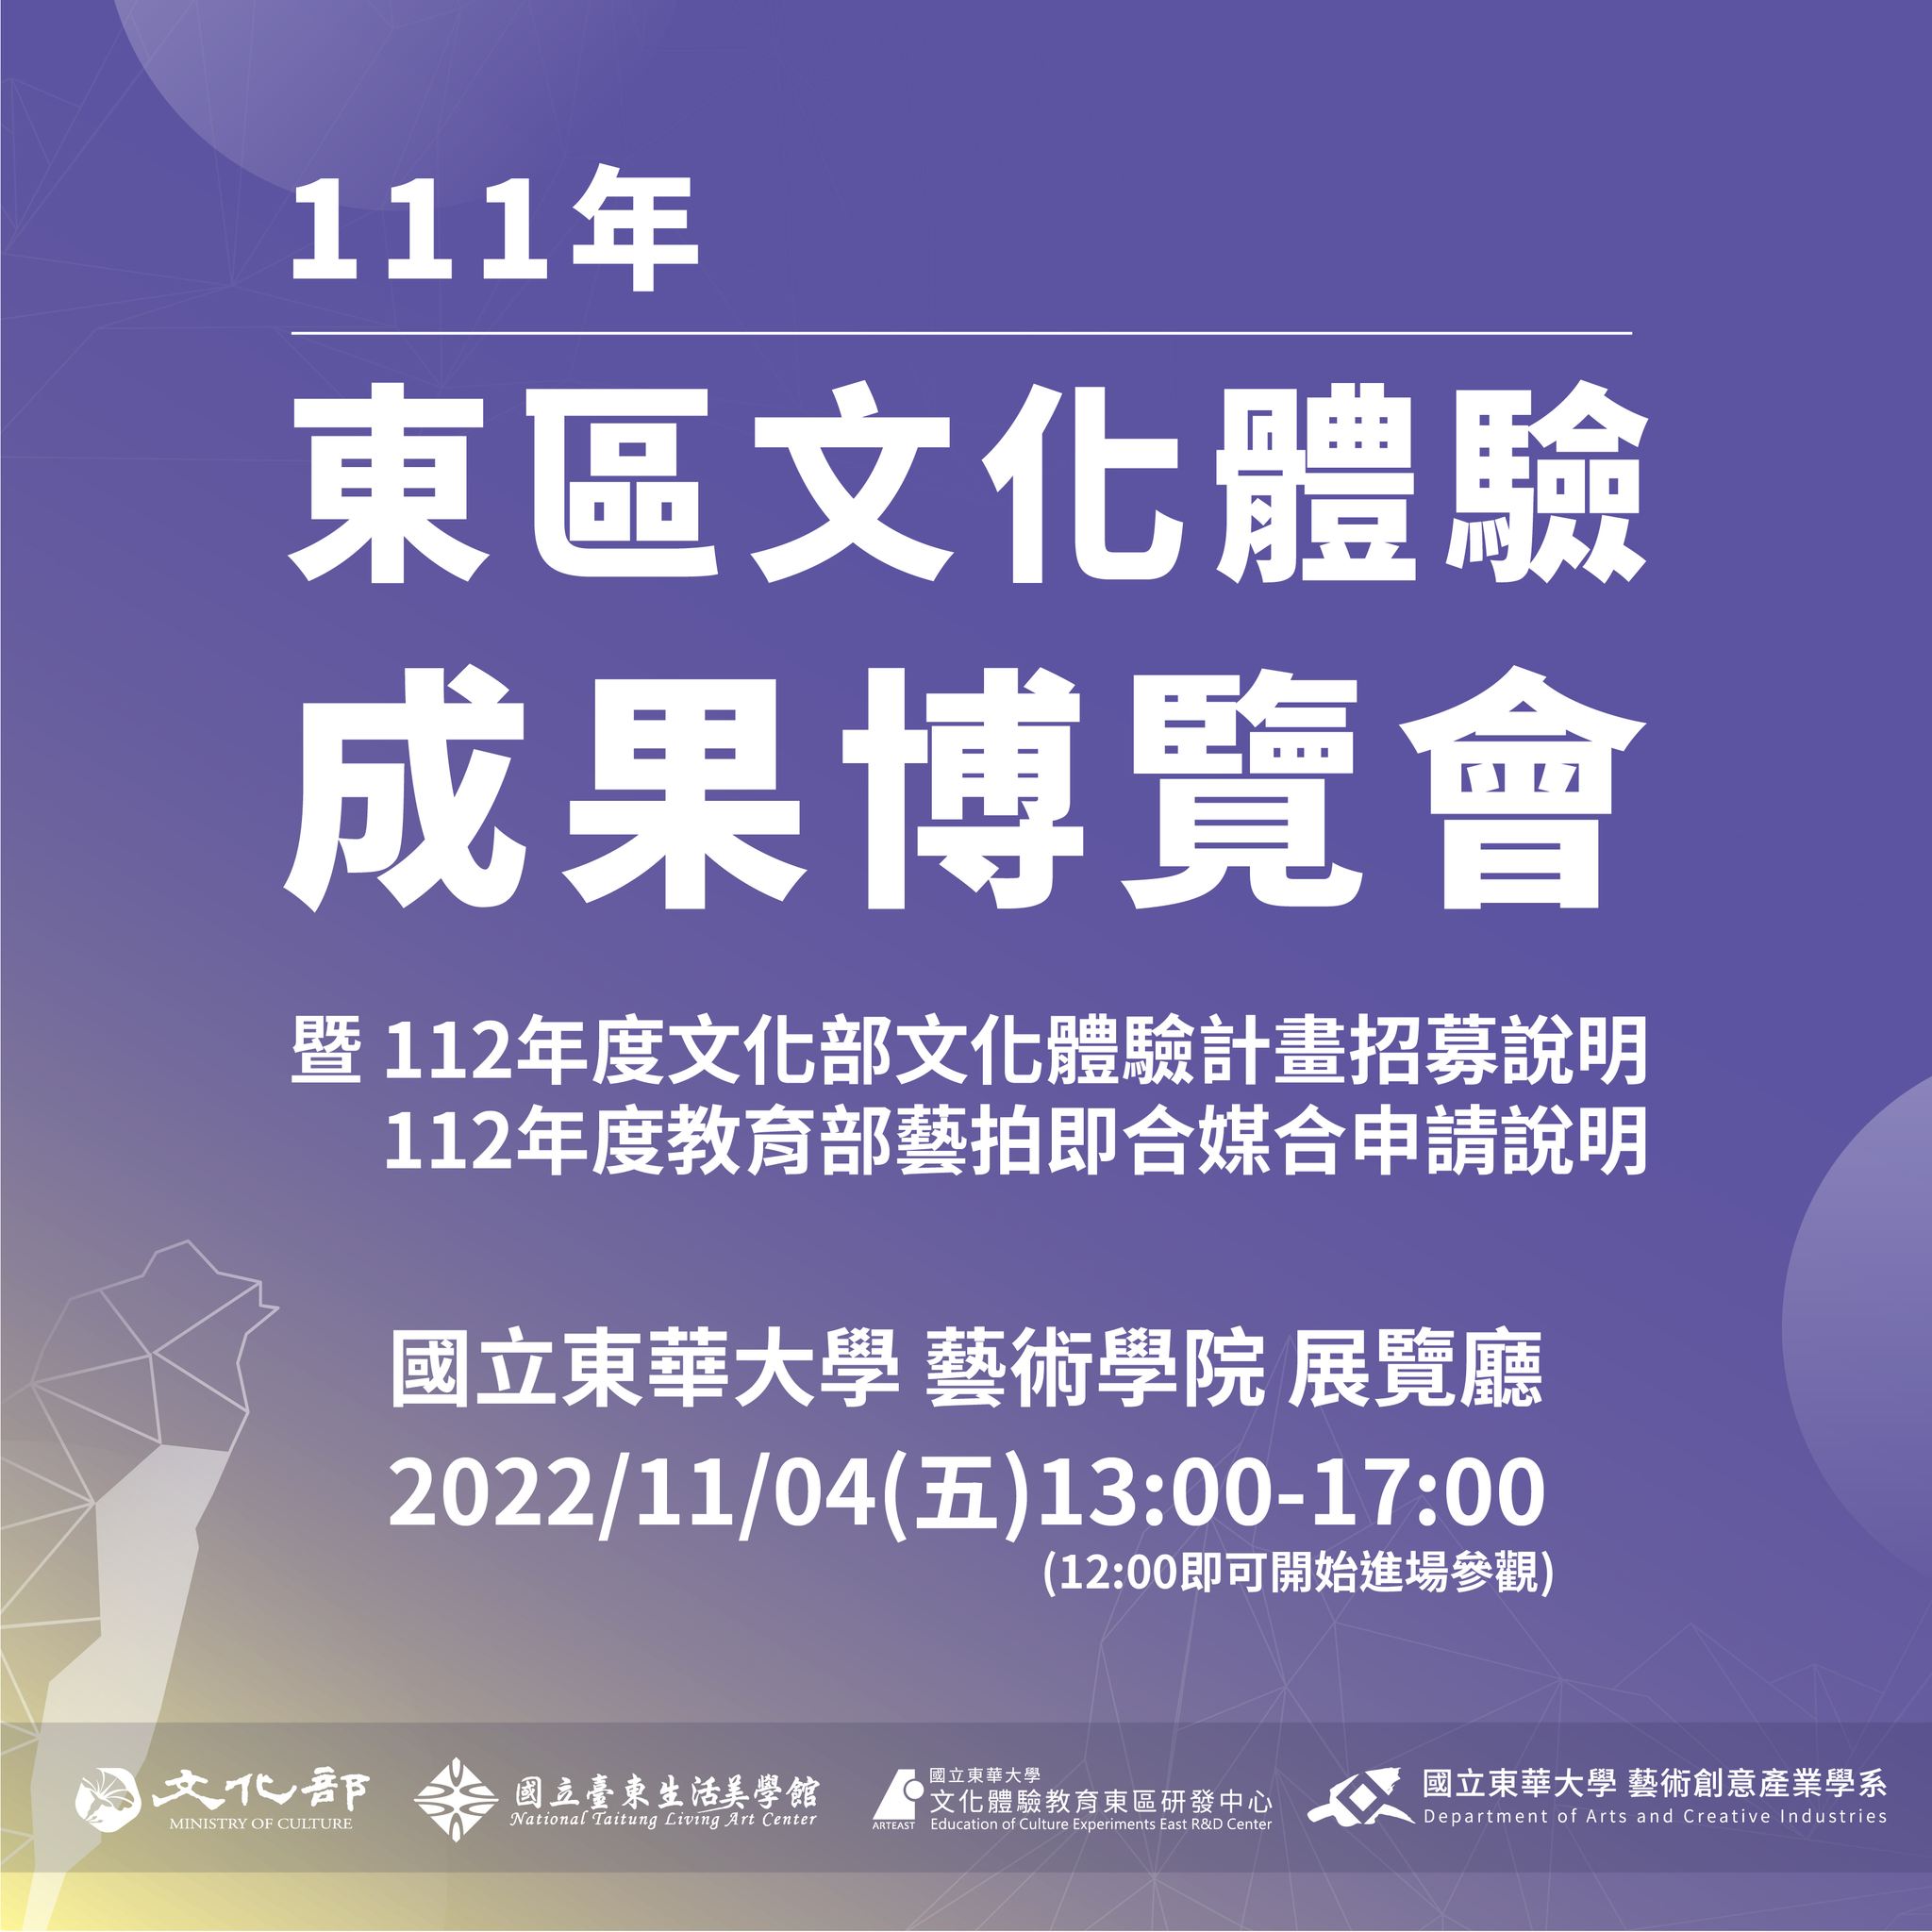 【展覽活動】111年東區文化體驗教育成果會111/11/04(五)13:00-17:00(另開新視窗)